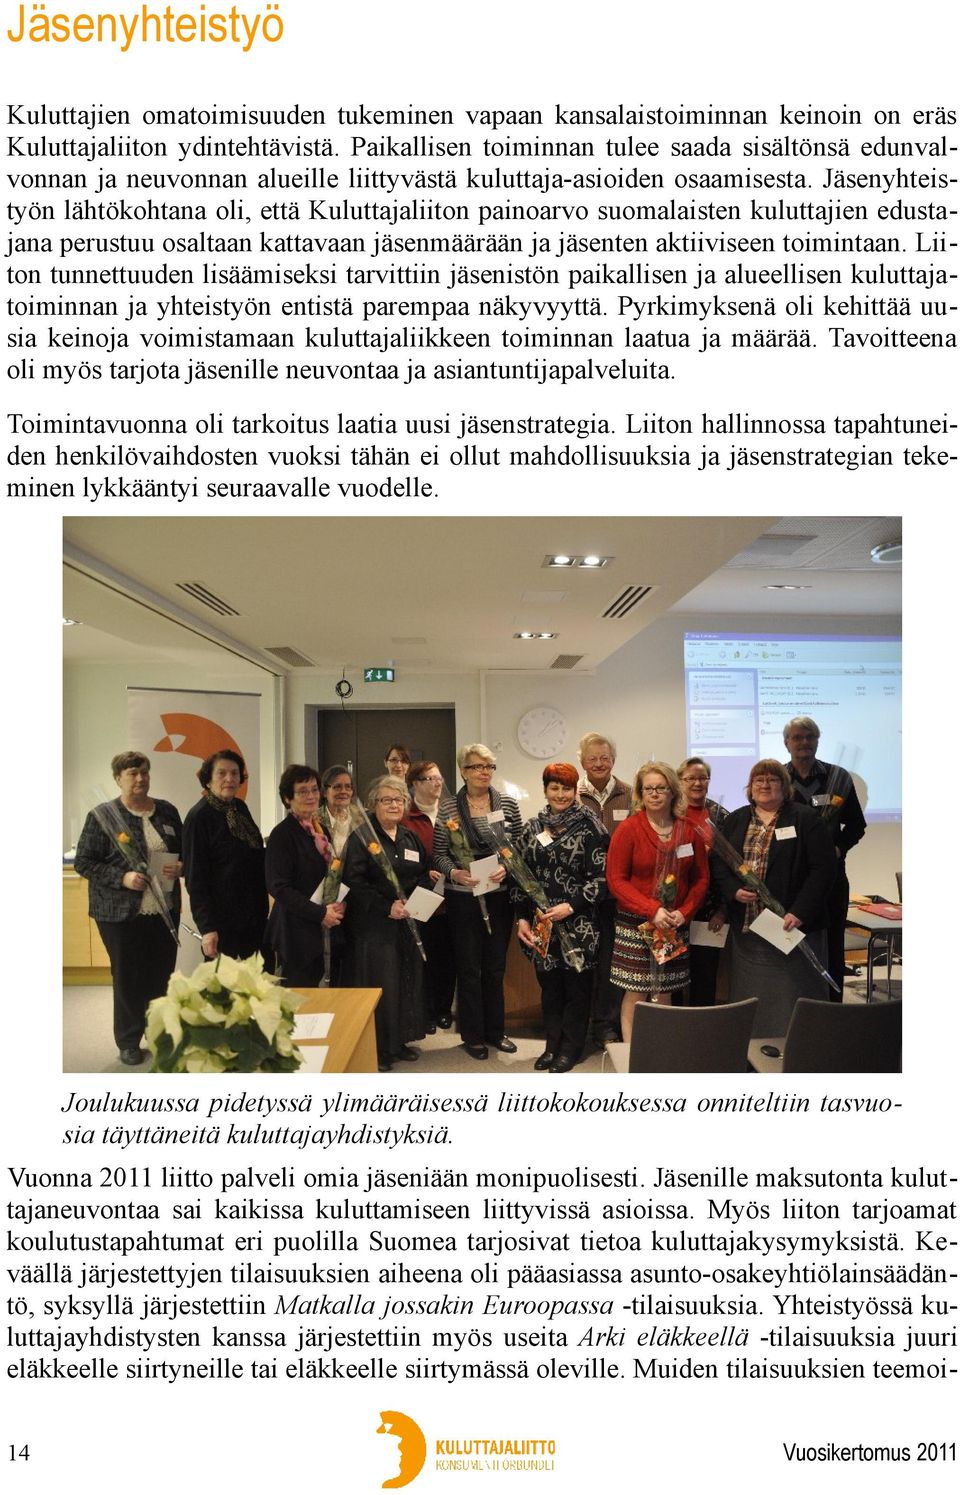 Jäsenyhteistyön lähtökohtana oli, että Kuluttajaliiton painoarvo suomalaisten kuluttajien edustajana perustuu osaltaan kattavaan jäsenmäärään ja jäsenten aktiiviseen toimintaan.